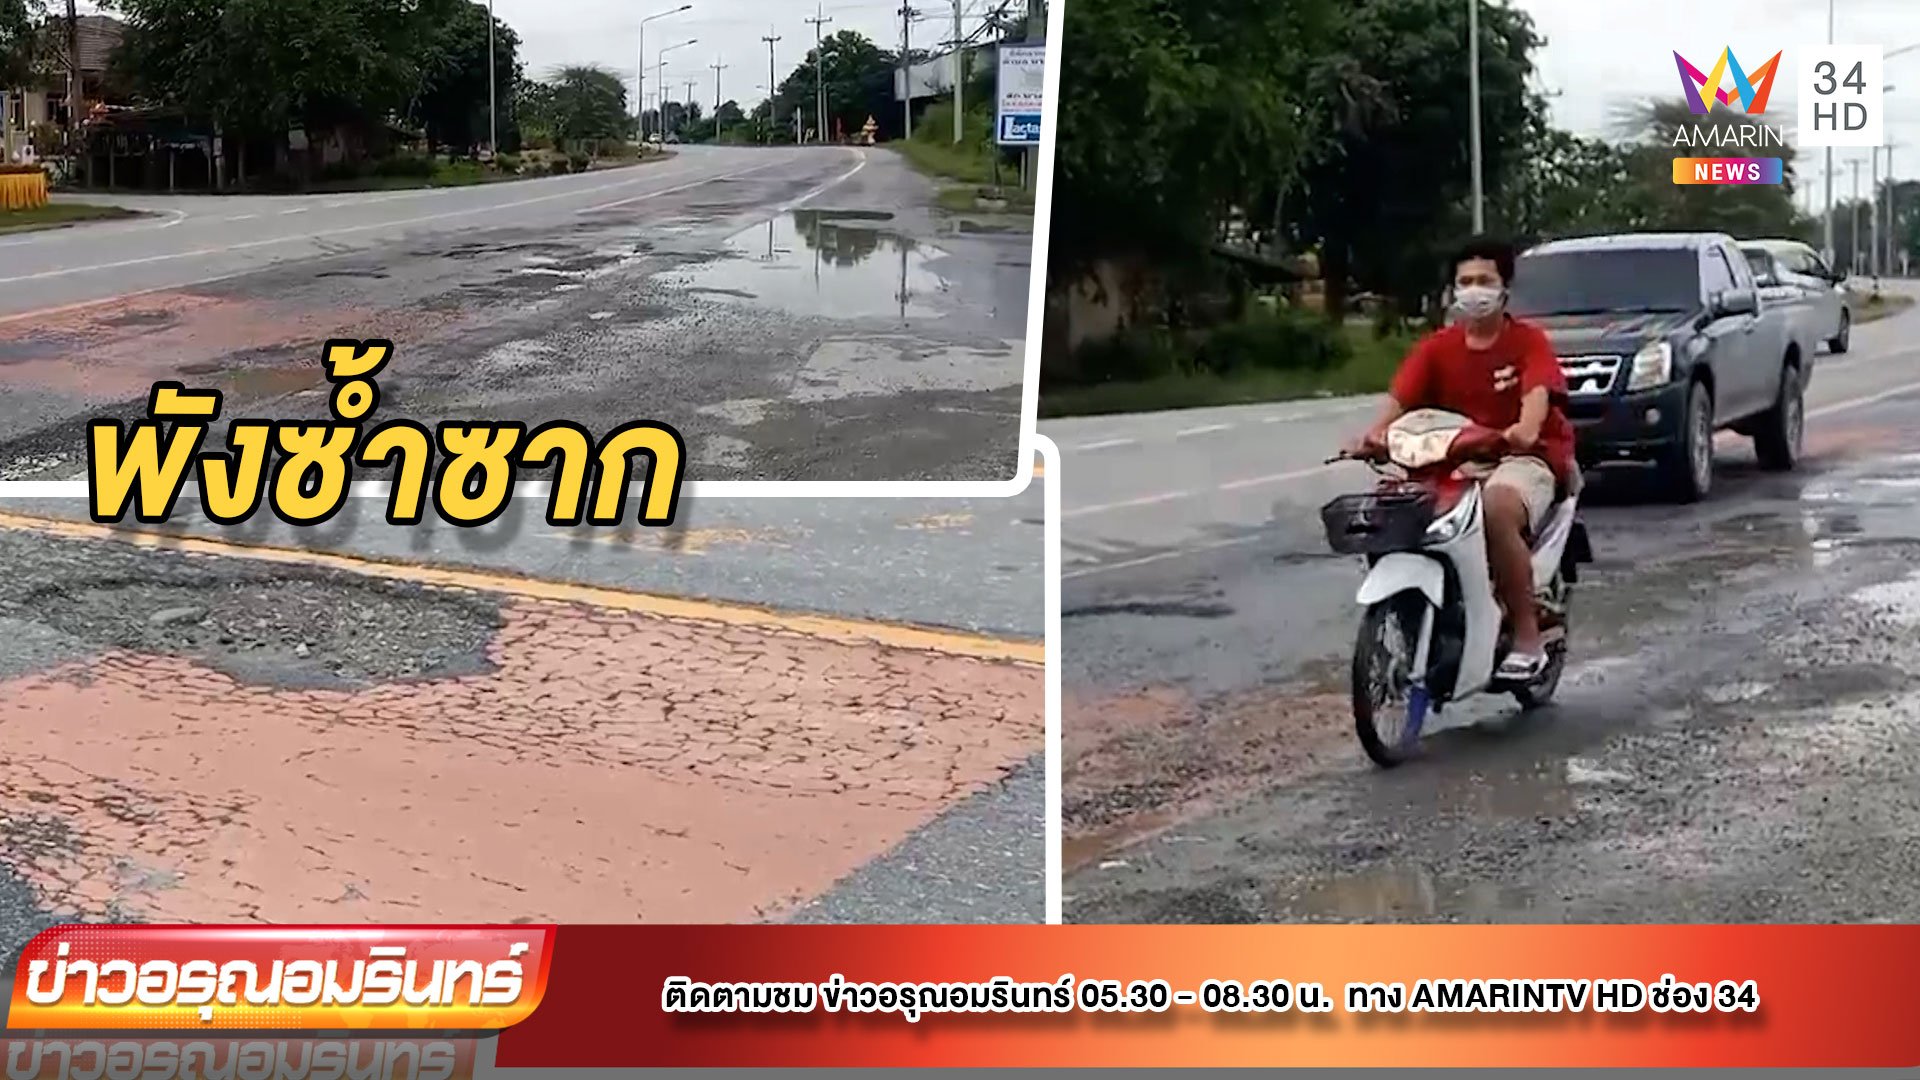 ชาวบ้านร้อง ถนนเป็นหลุมทำเกิดอุบัติเหตุซ้ำซาก | ข่าวอรุณอมรินทร์ | 27 ก.ย. 64 | AMARIN TVHD34